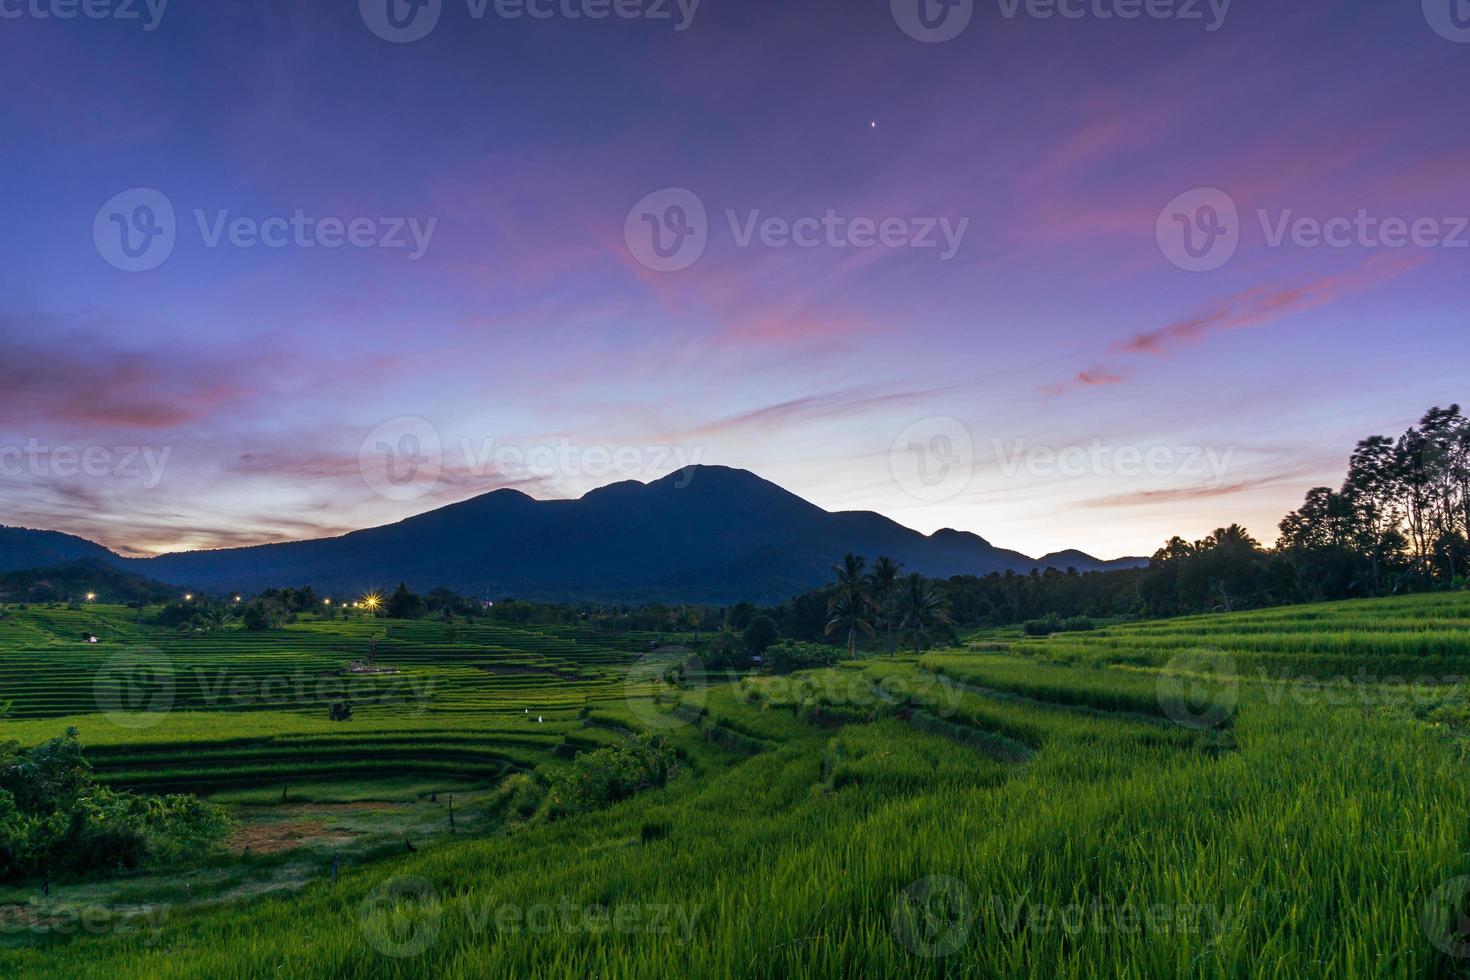 panorama de la belleza natural de asia. amplia vista de los campos de arroz verde en una zona forestal virgen foto